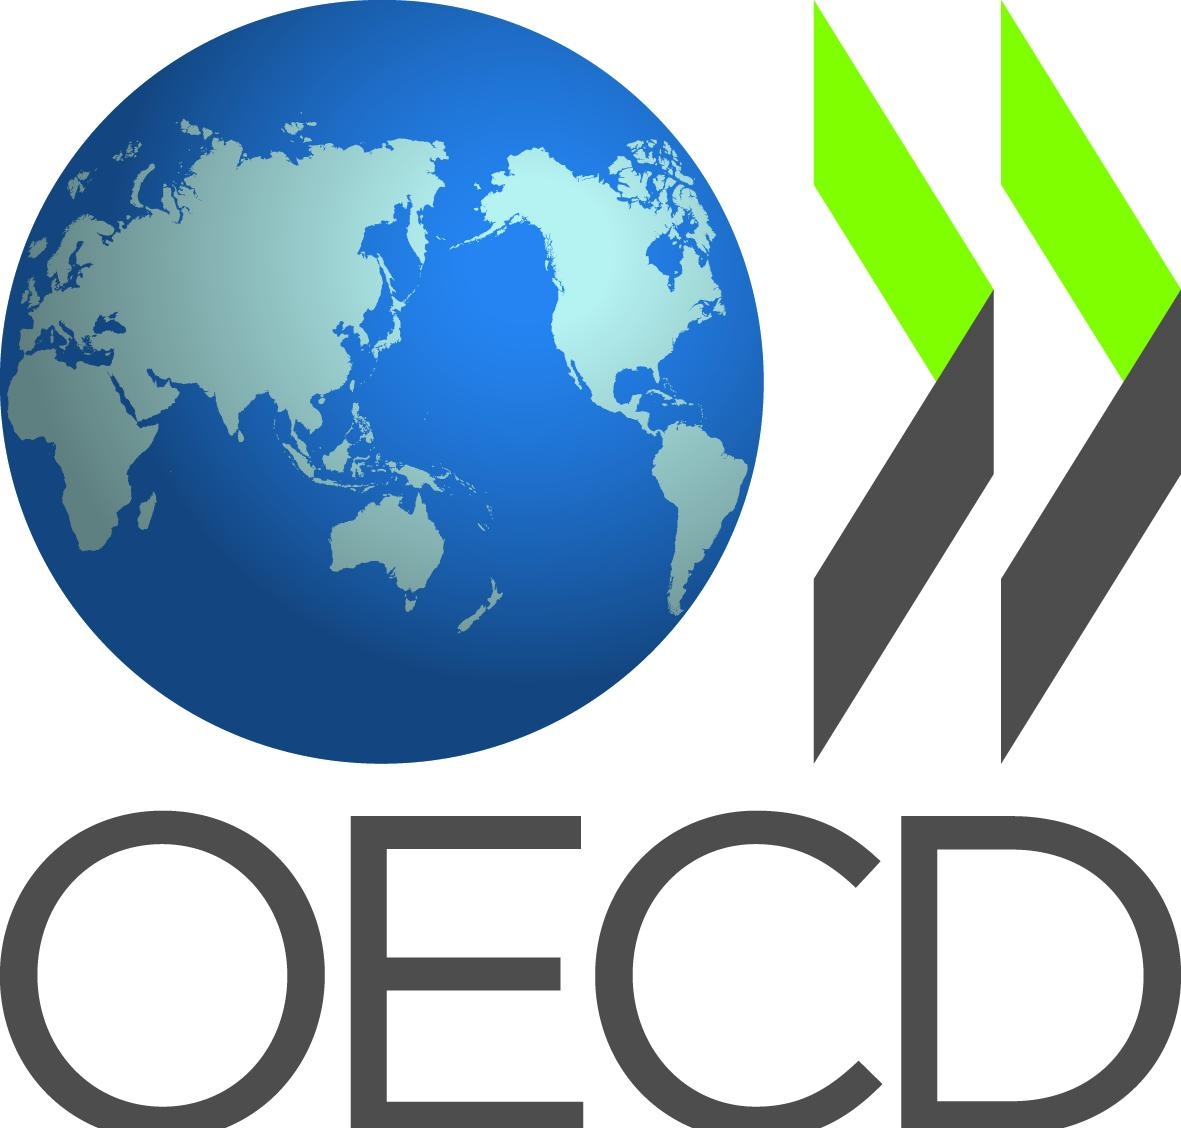 Логотип Организации экономического сотрудничества и развития